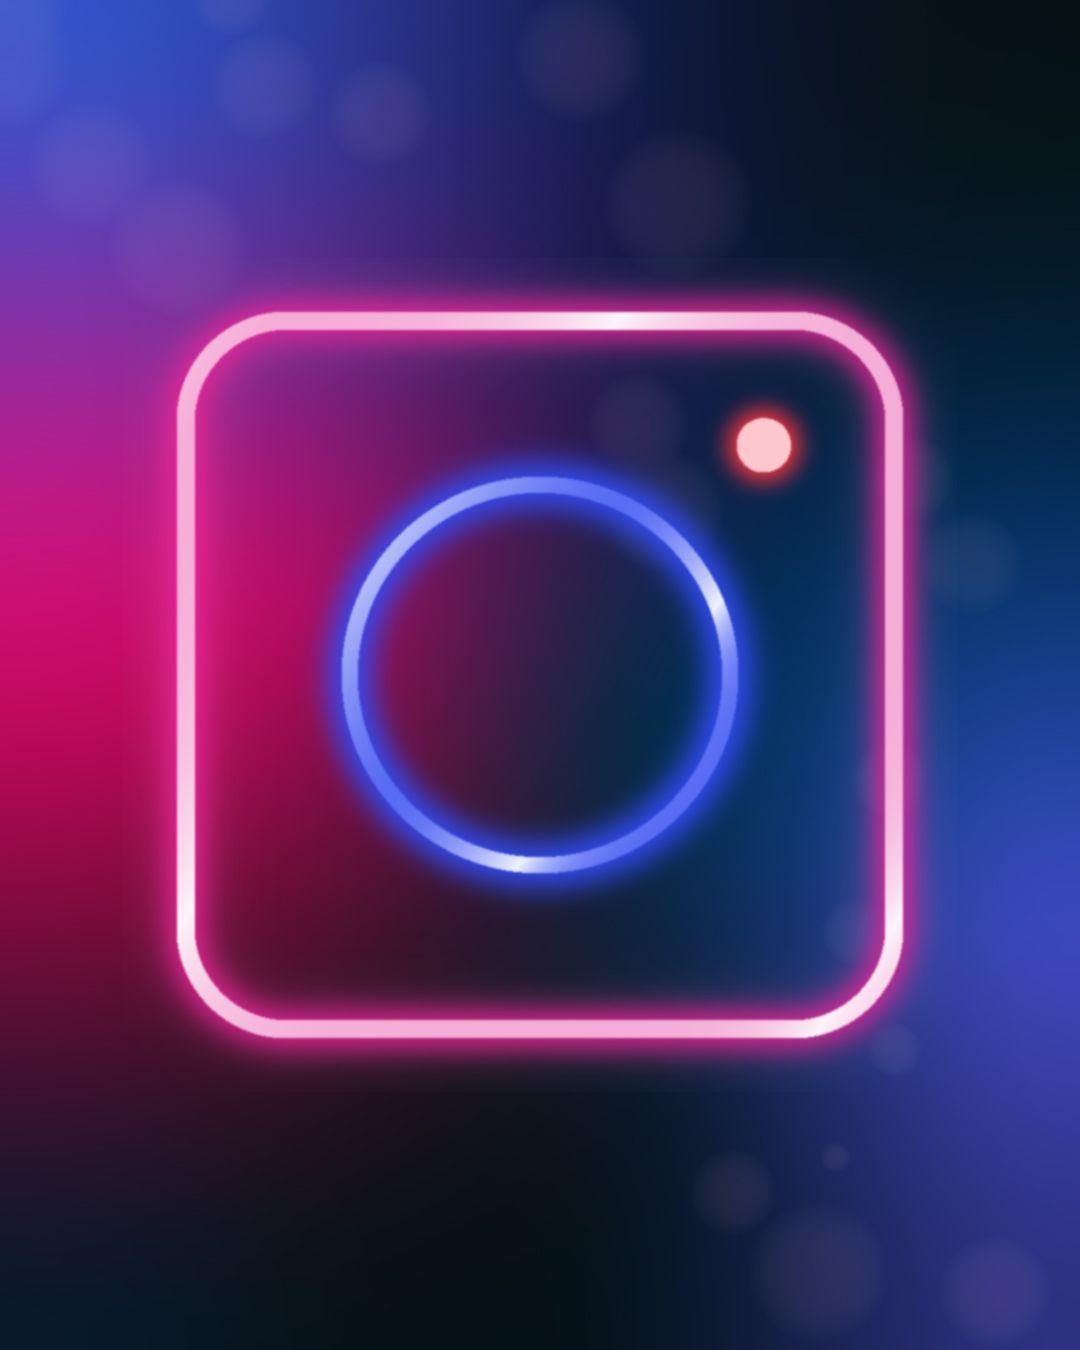 Instagram Neon Wallpapers - Top Free Instagram Neon Backgrounds ...